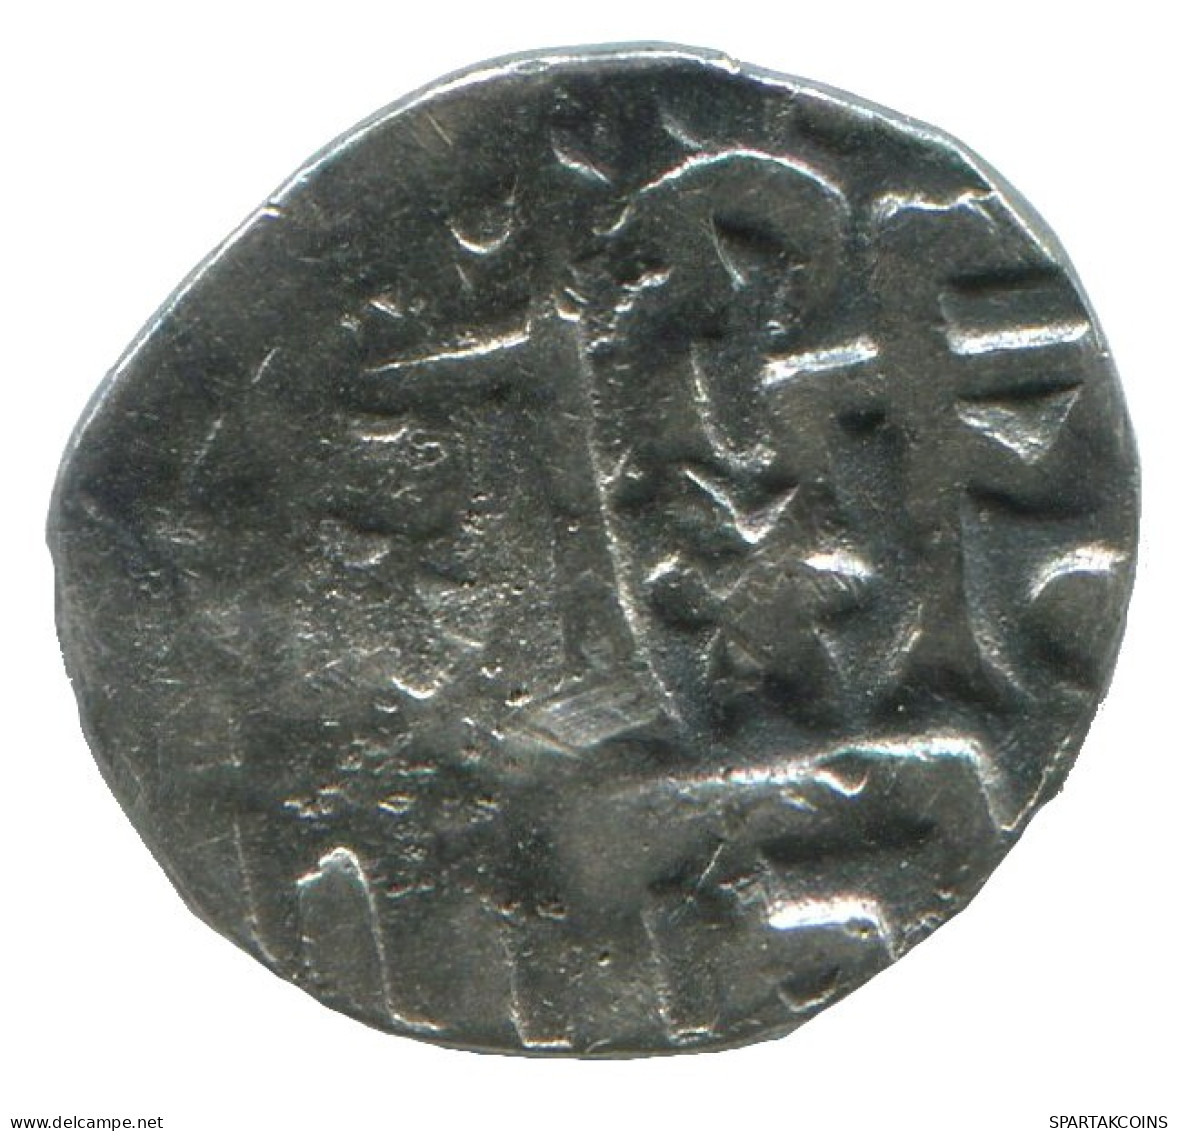 GOLDEN HORDE Silver Dirham Medieval Islamic Coin 0.9g/13mm #NNN2032.8.E.A - Islamische Münzen